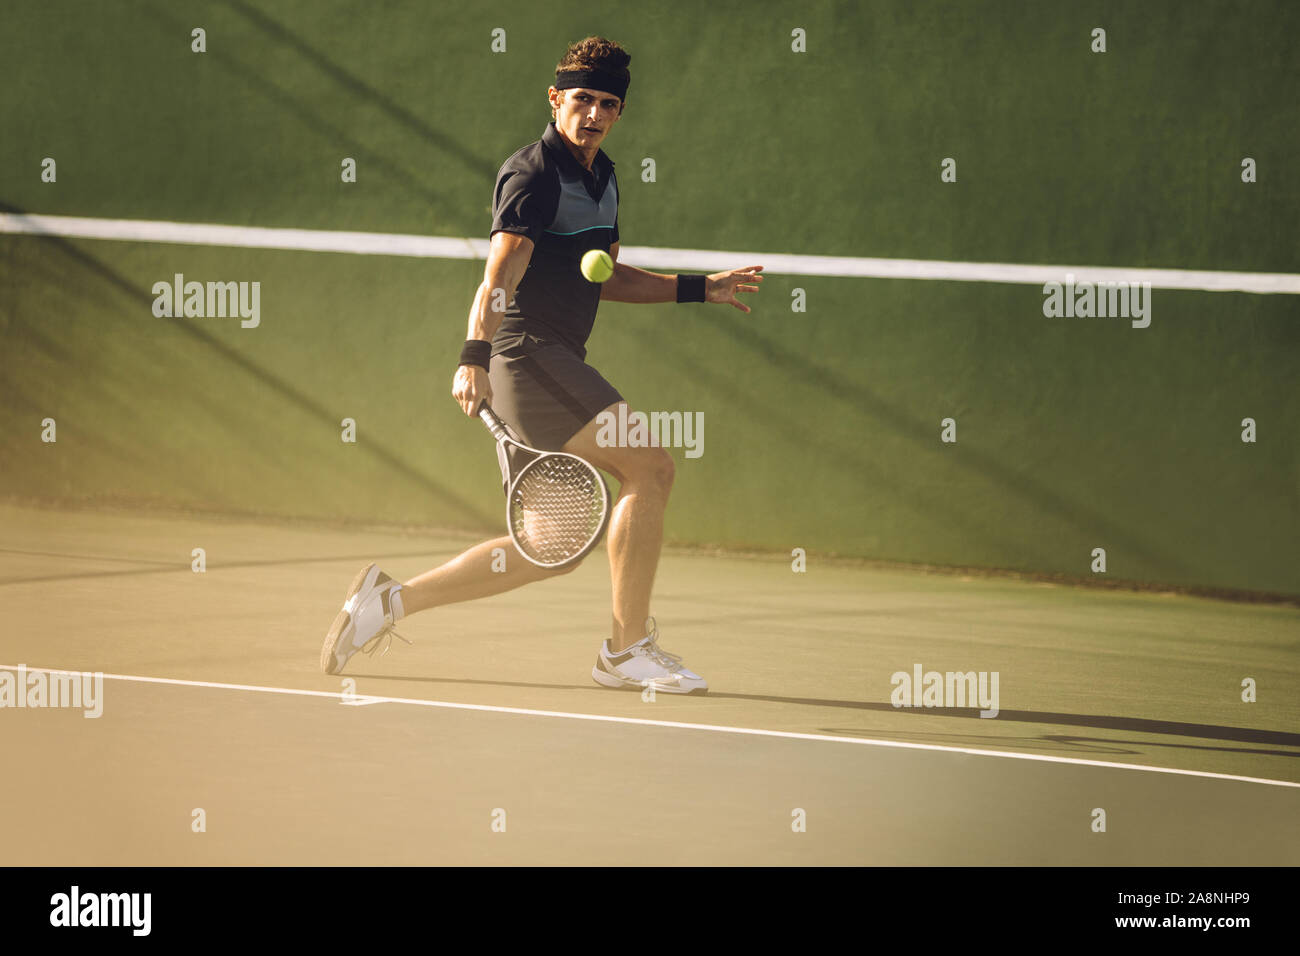 Joueur de tennis professionnel frapper un revers solide pendant un match. Tennis player jouant sur une surface dure. Banque D'Images